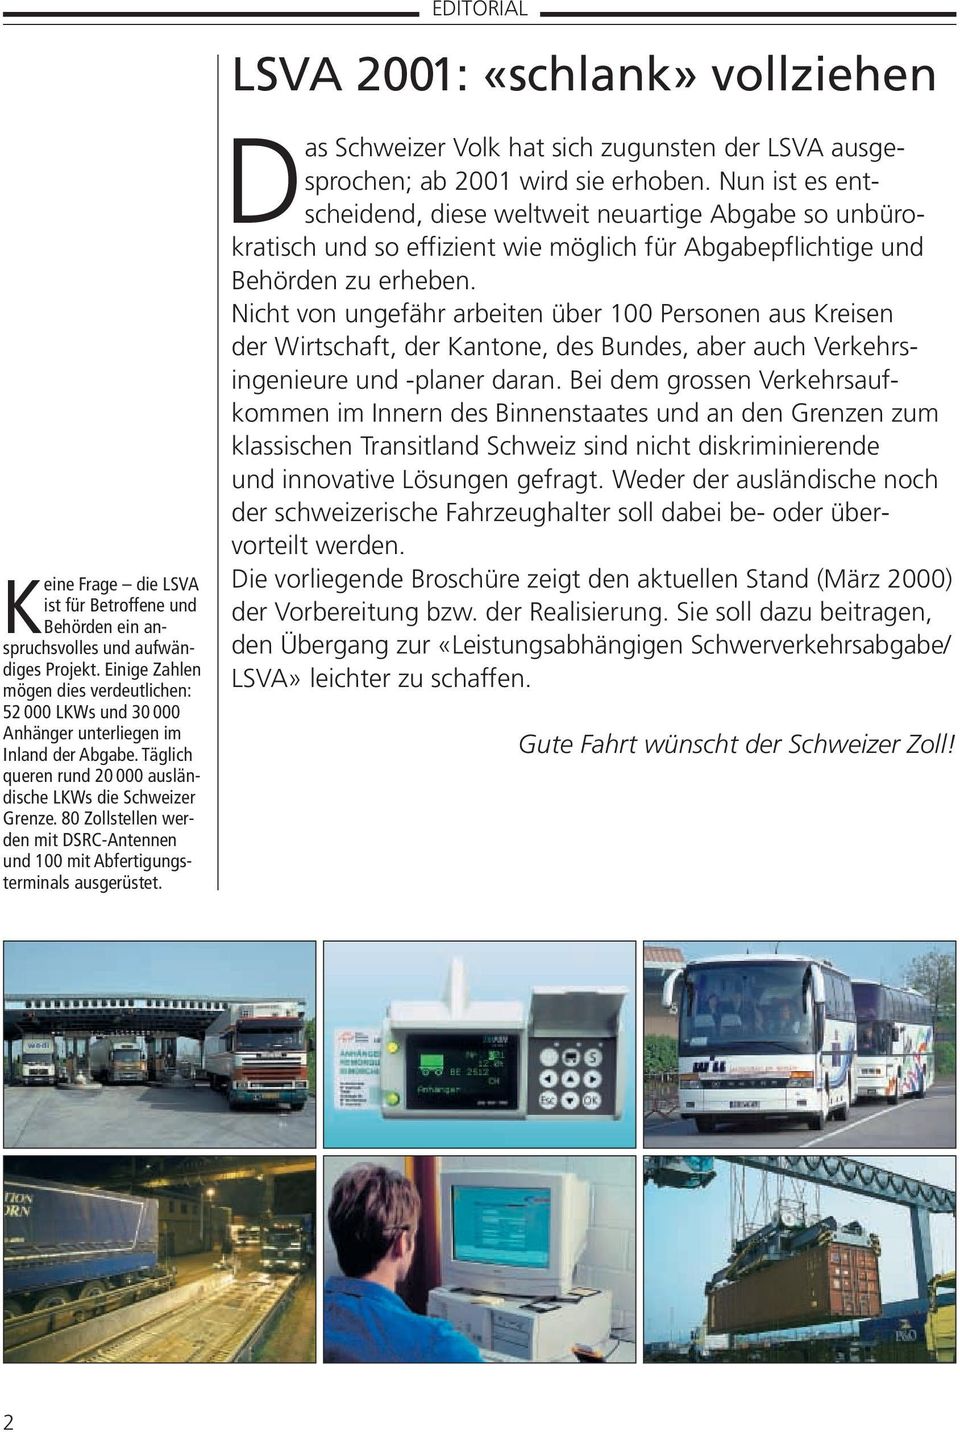 80 Zollstellen werden mit DSRC-Antennen und 100 mit Abfertigungsterminals ausgerüstet. Das Schweizer Volk hat sich zugunsten der LSVA ausgesprochen; ab 2001 wird sie erhoben.